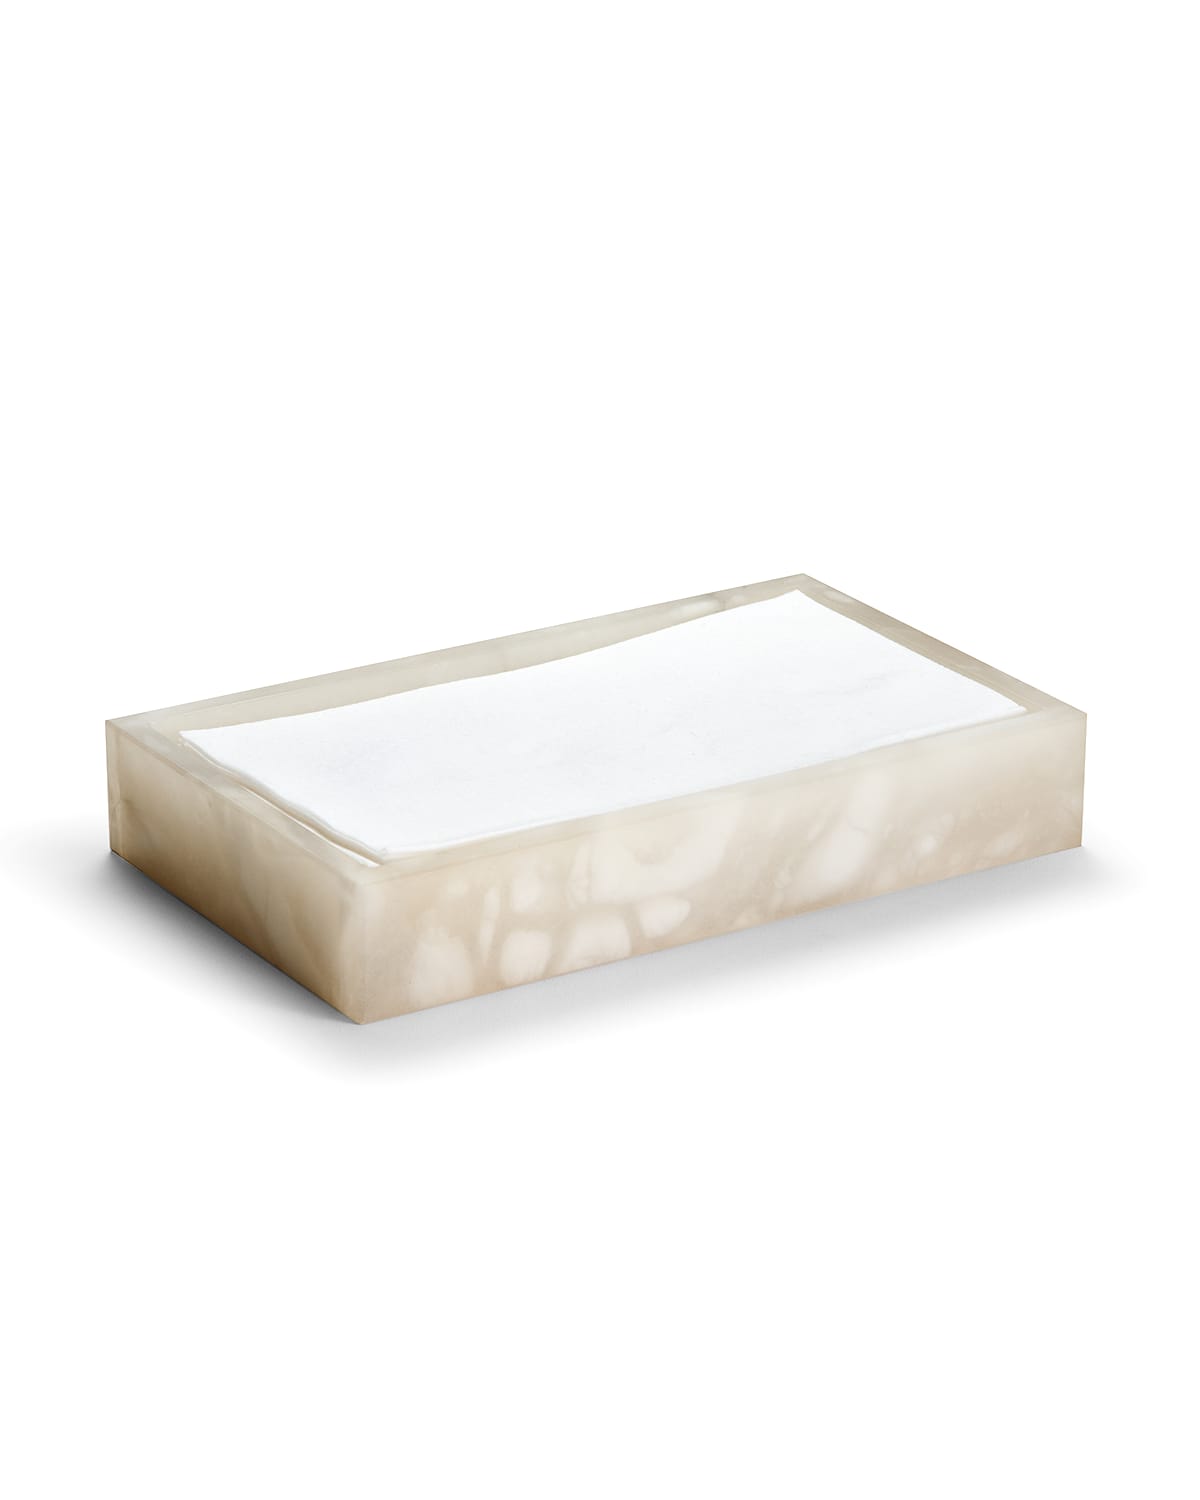 Labrazel Alisa Alabaster Towel Tray, Cream